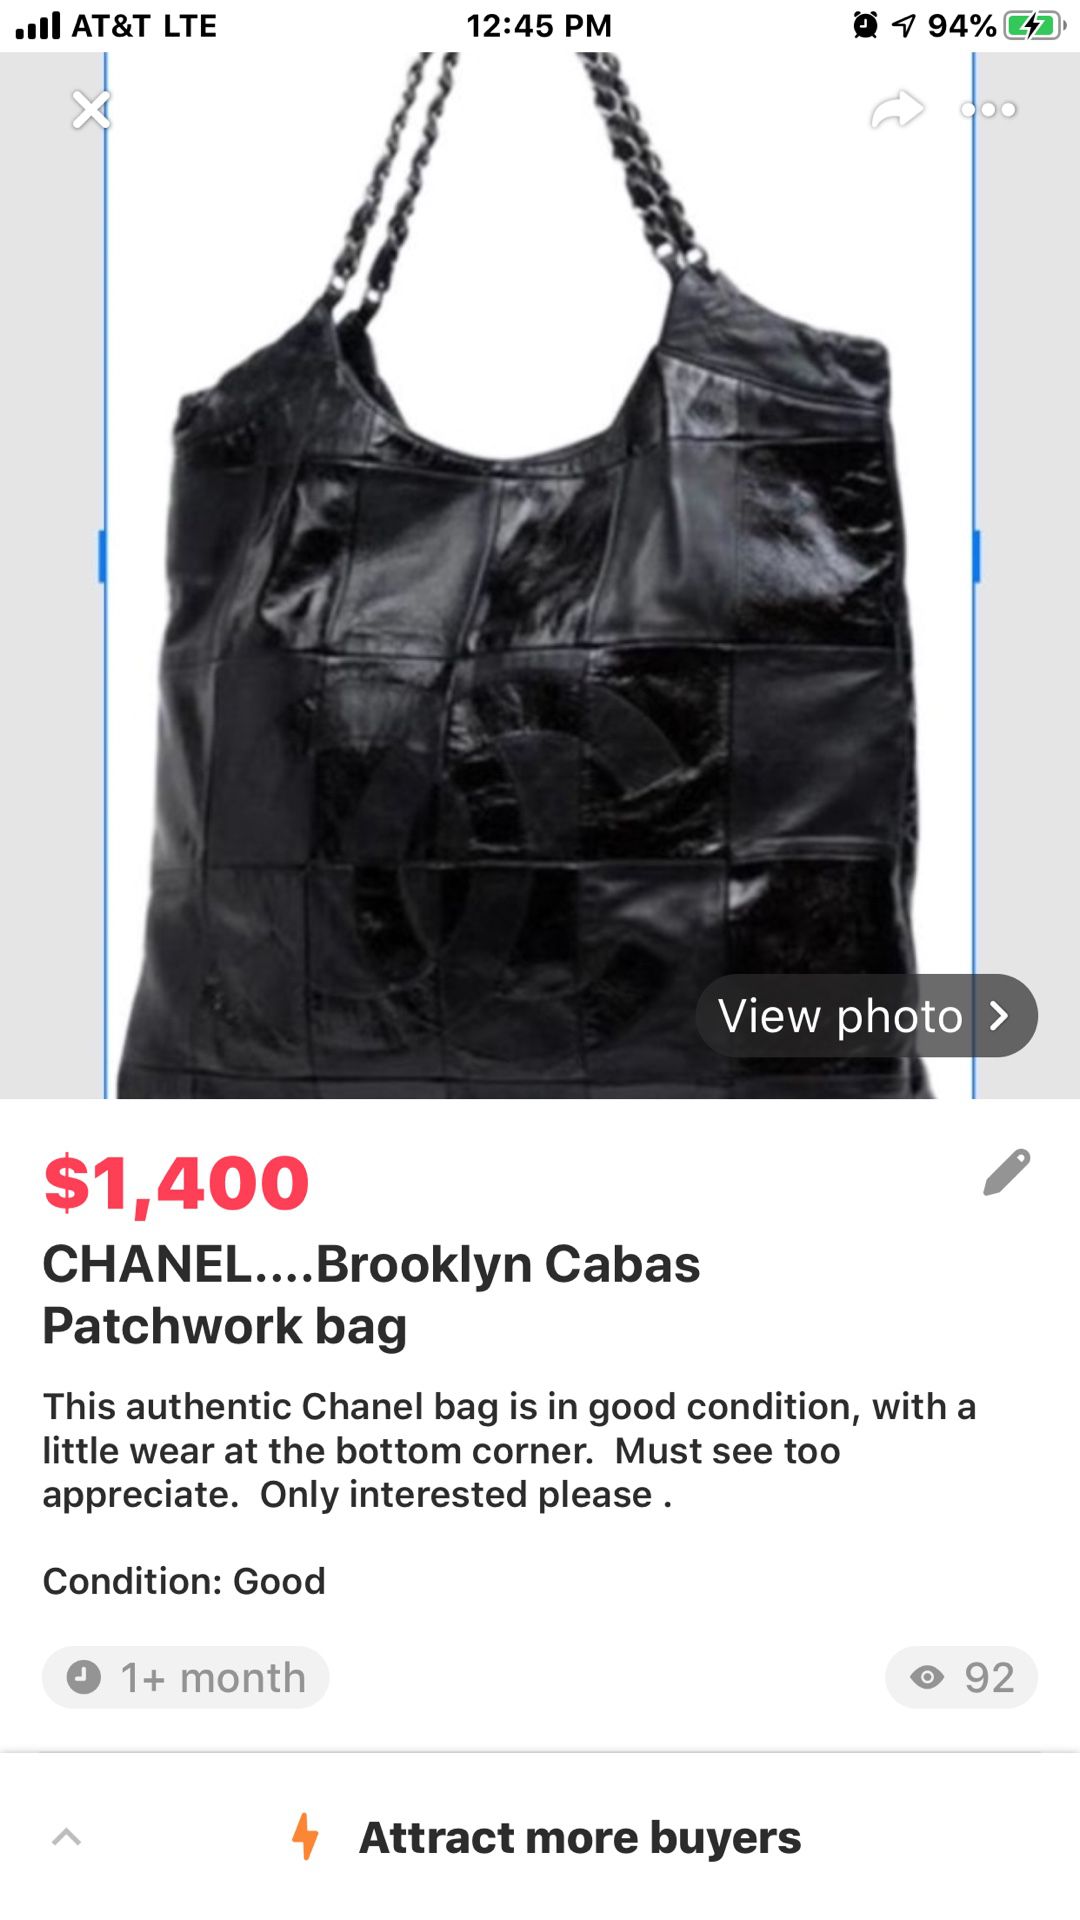 CHANEL.....Brooklyn Cabas Patchwork bag